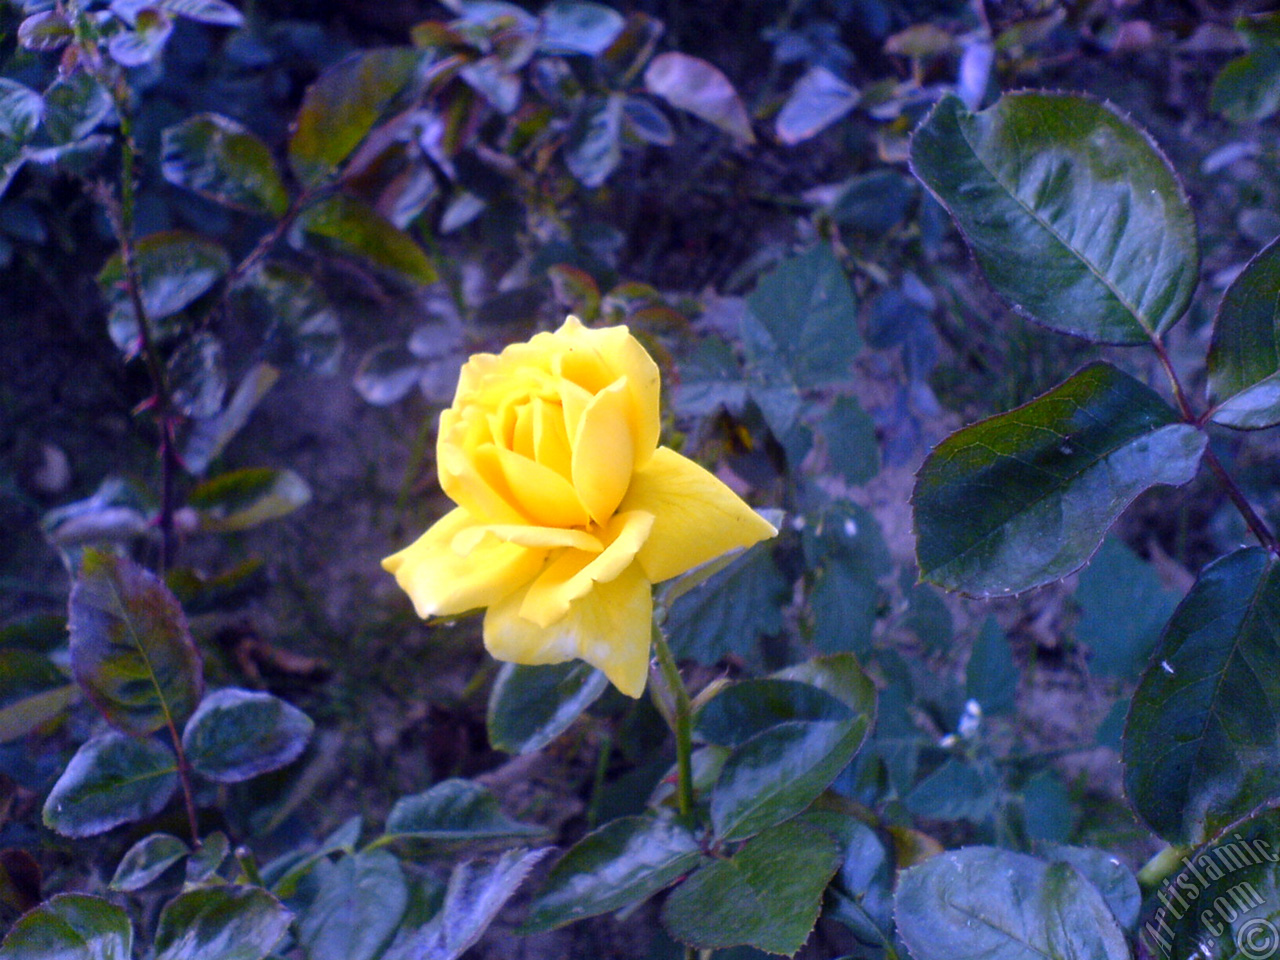 Yellow rose photo.
